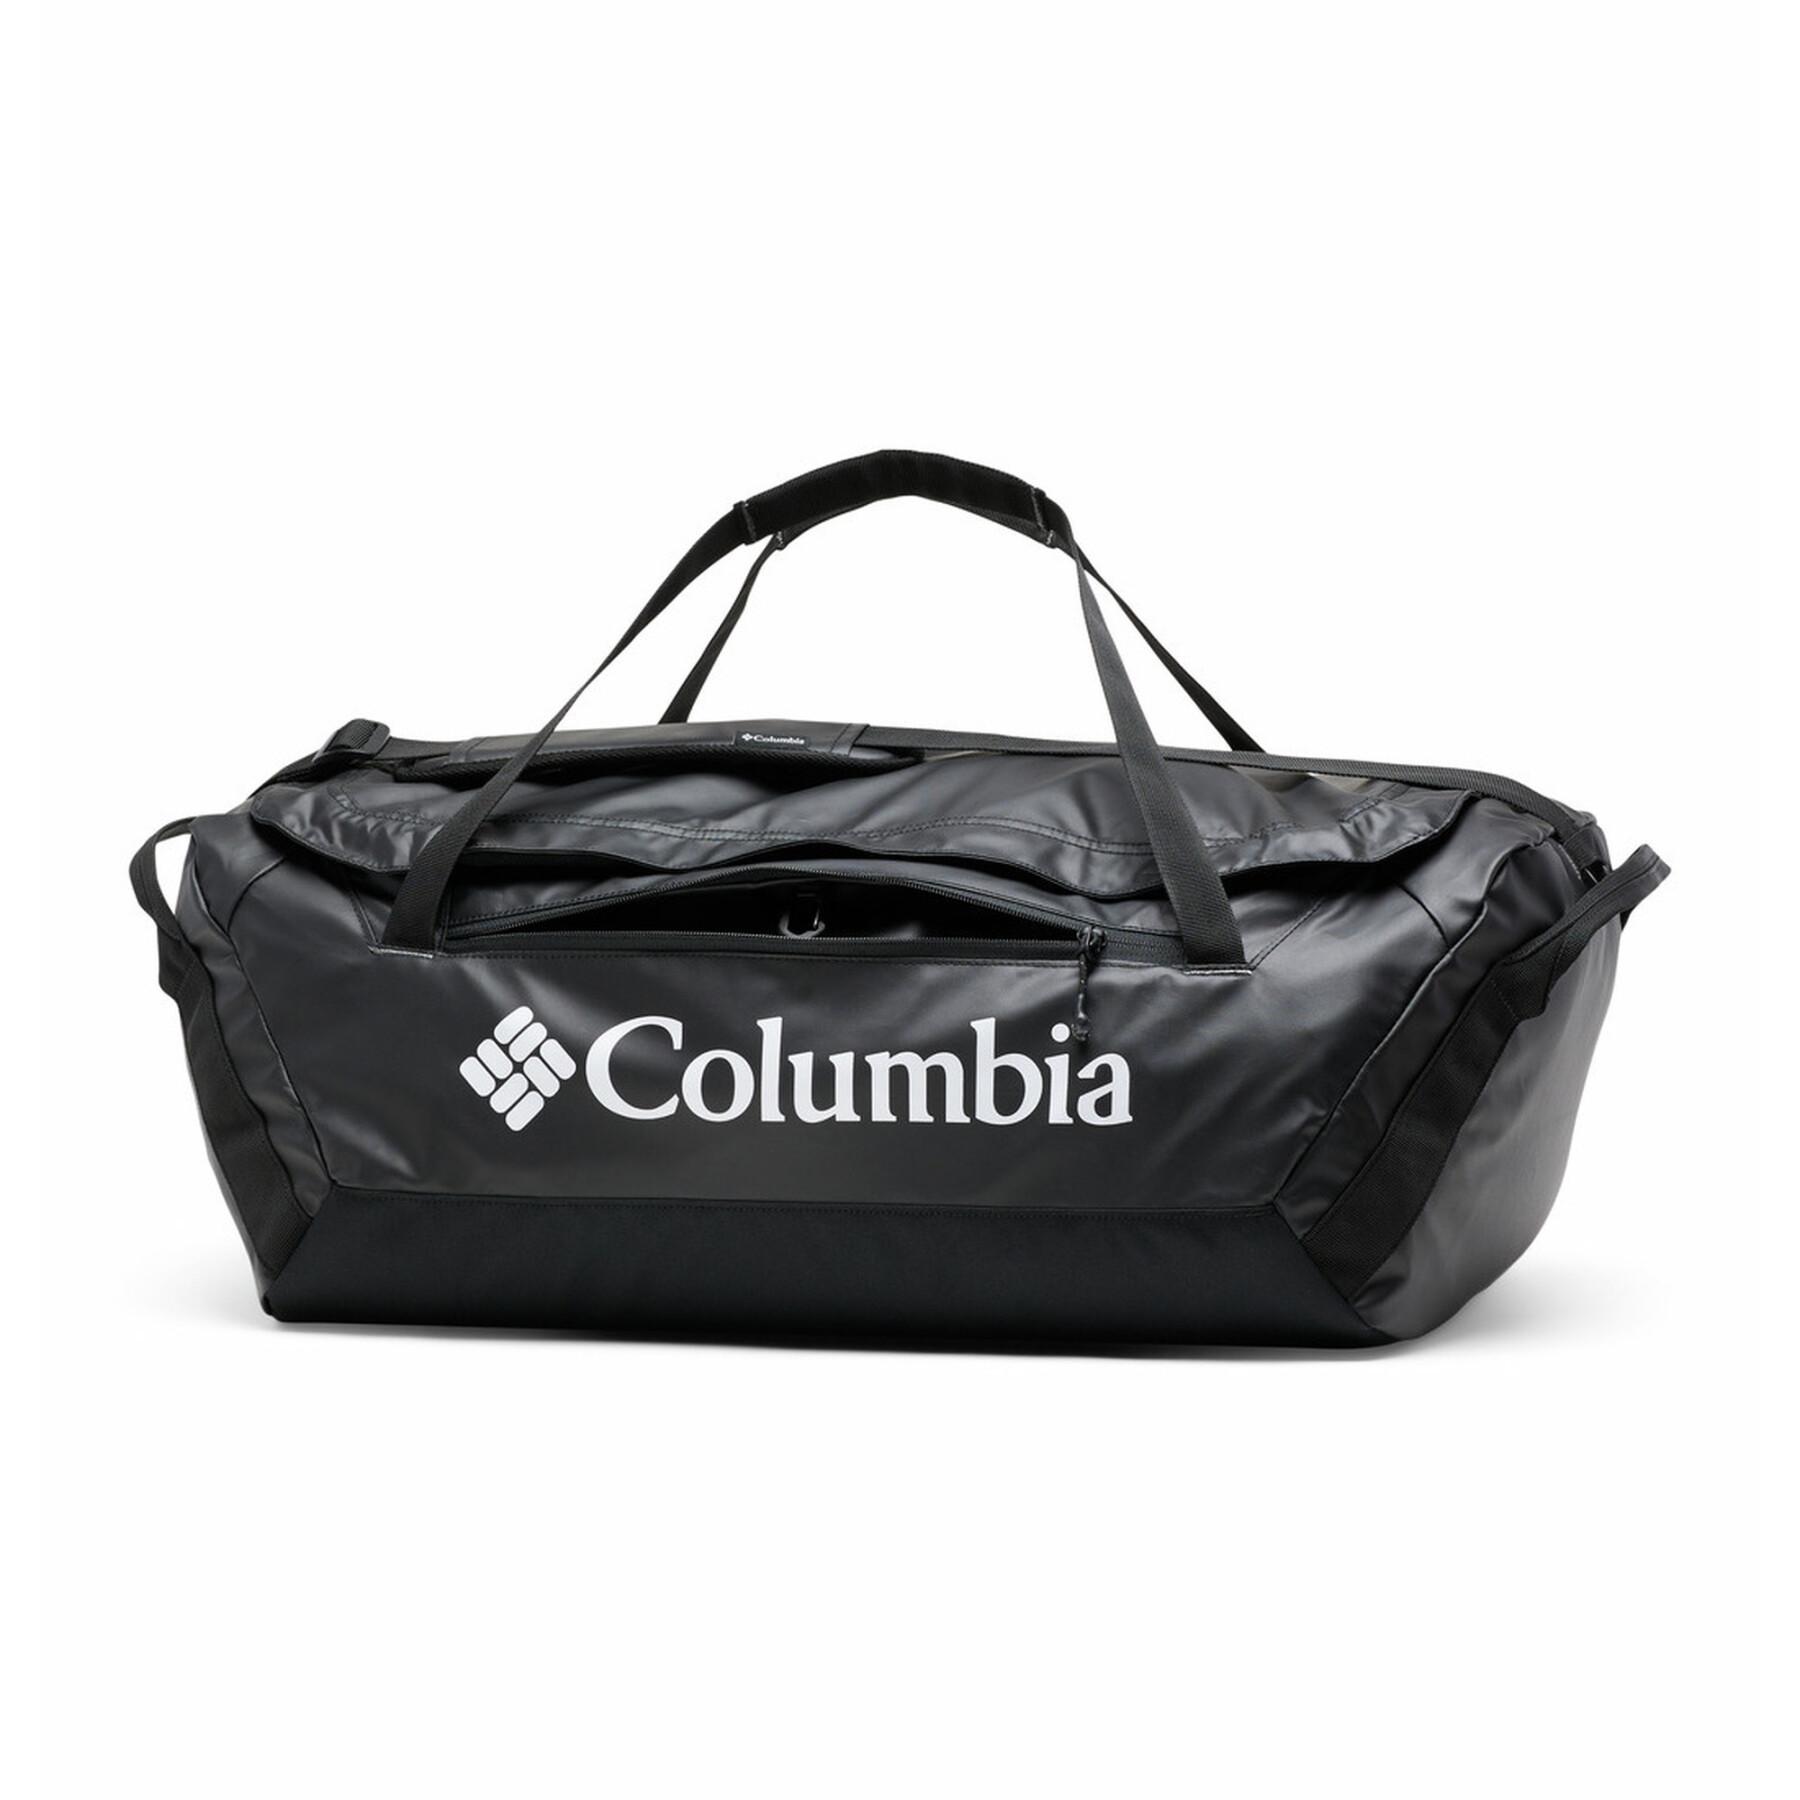 Väska Columbia On The Go 55l